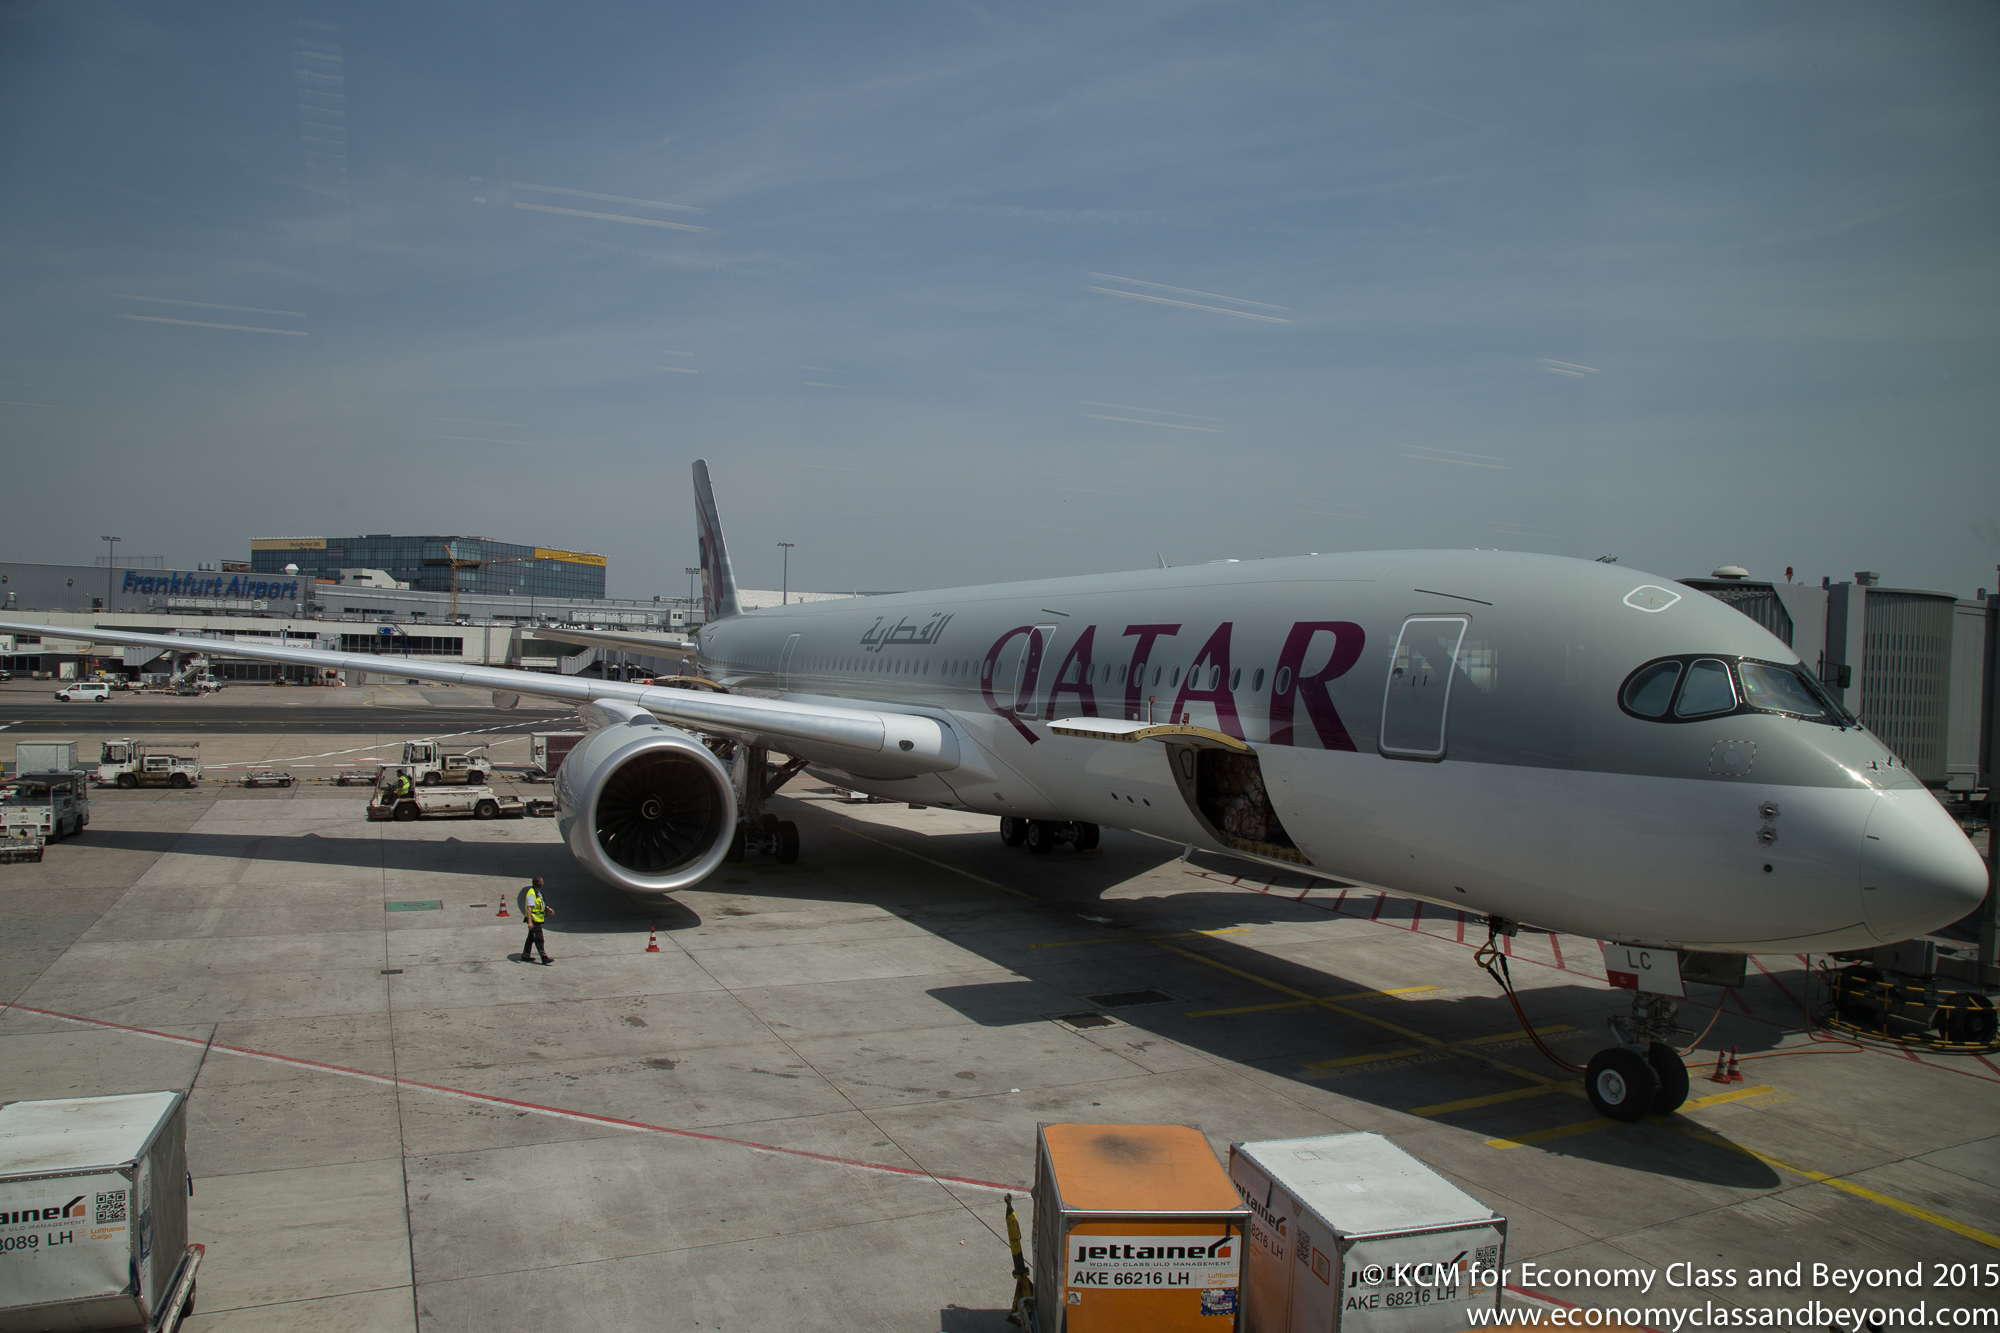 Resultado de imagem para Airbus a350-900 qatar